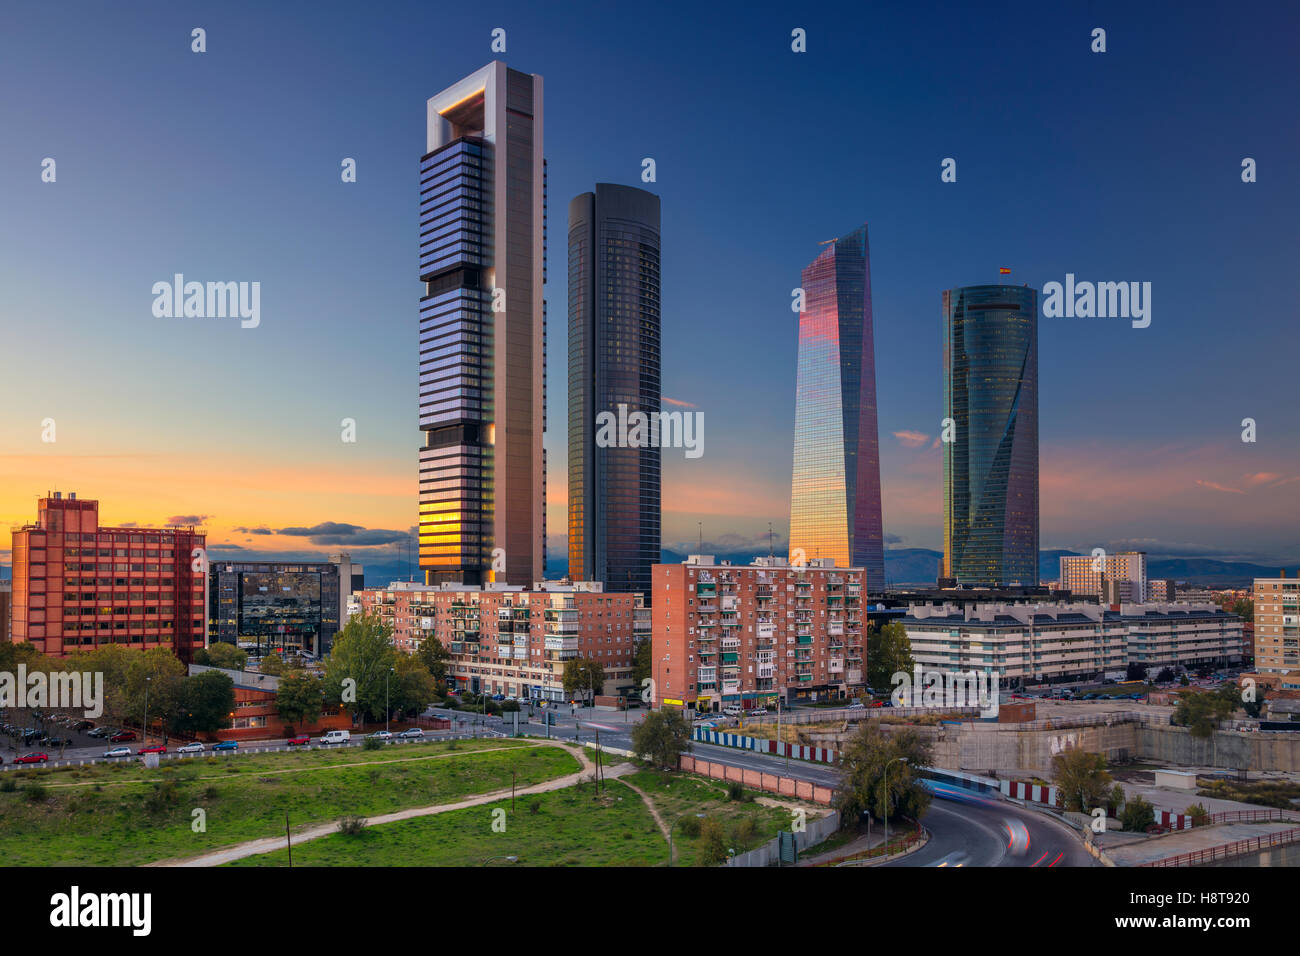 Madrid. Image de Madrid, Espagne quartier financier avec les gratte-ciel modernes au coucher du soleil. Banque D'Images